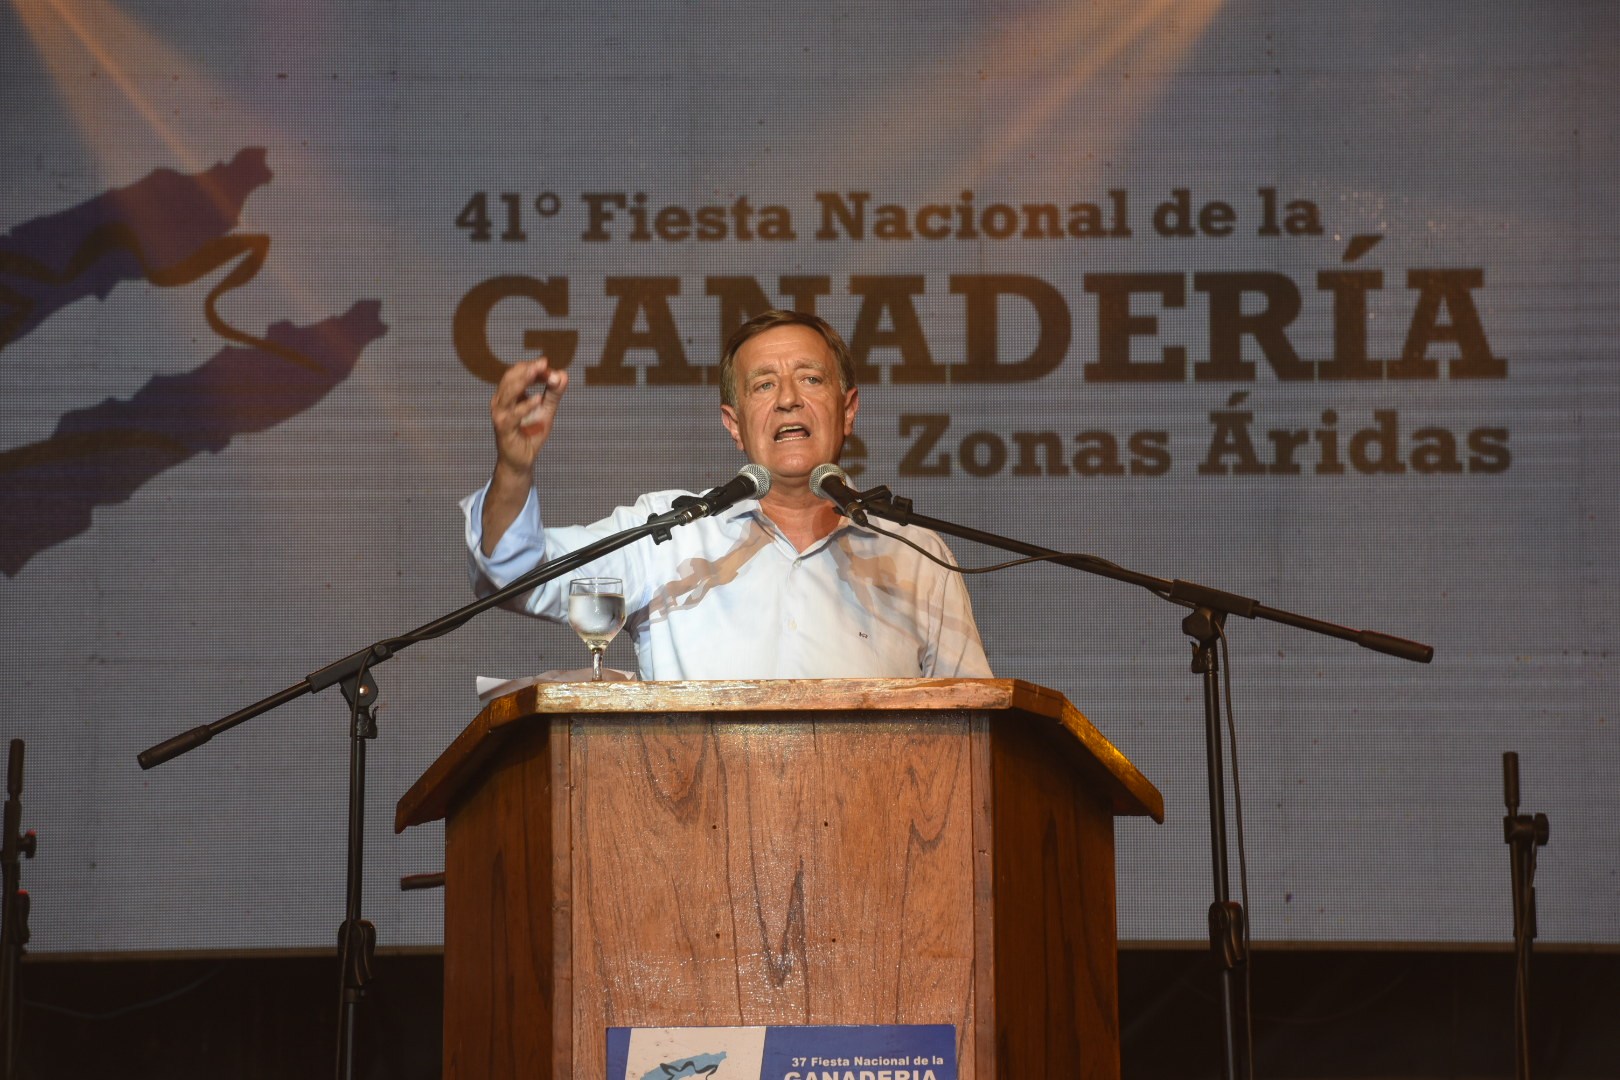 Rodolfo Suarez: “La actitud del Presidente sobre Portezuelo del Viento fue un cachetazo para los mendocinos”